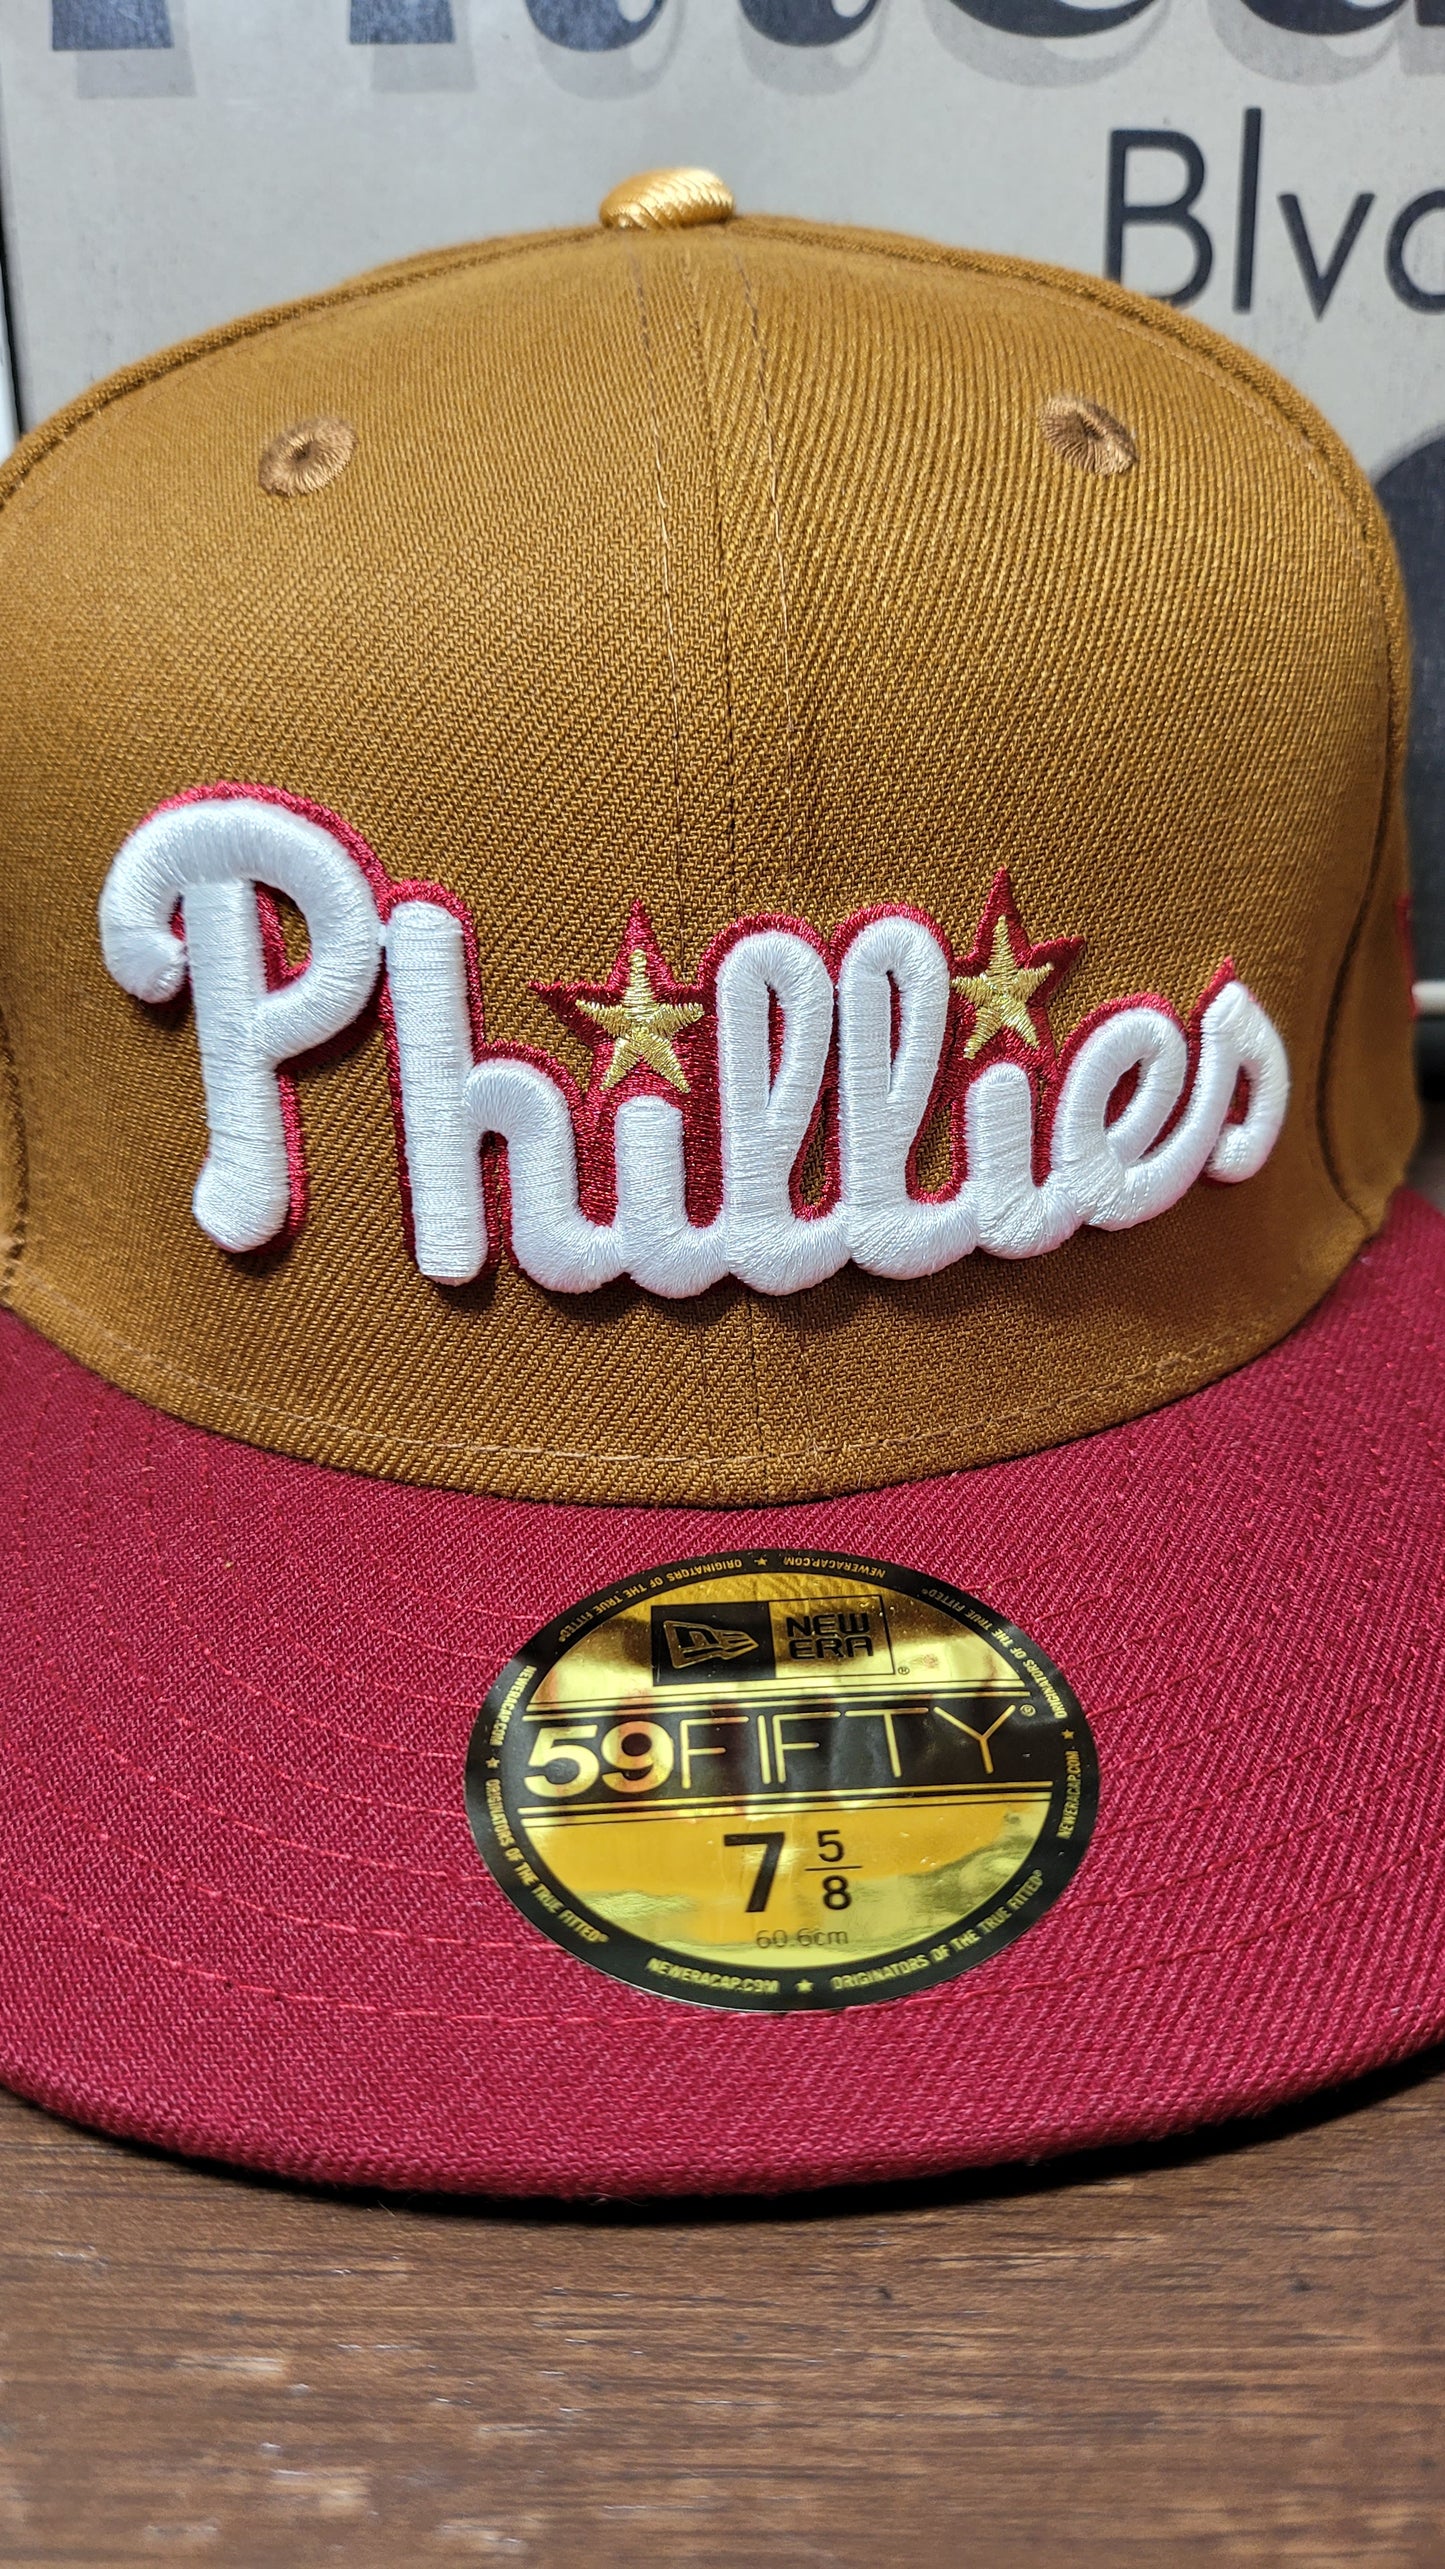 Philadelphia Phillies Online New era Exclusive